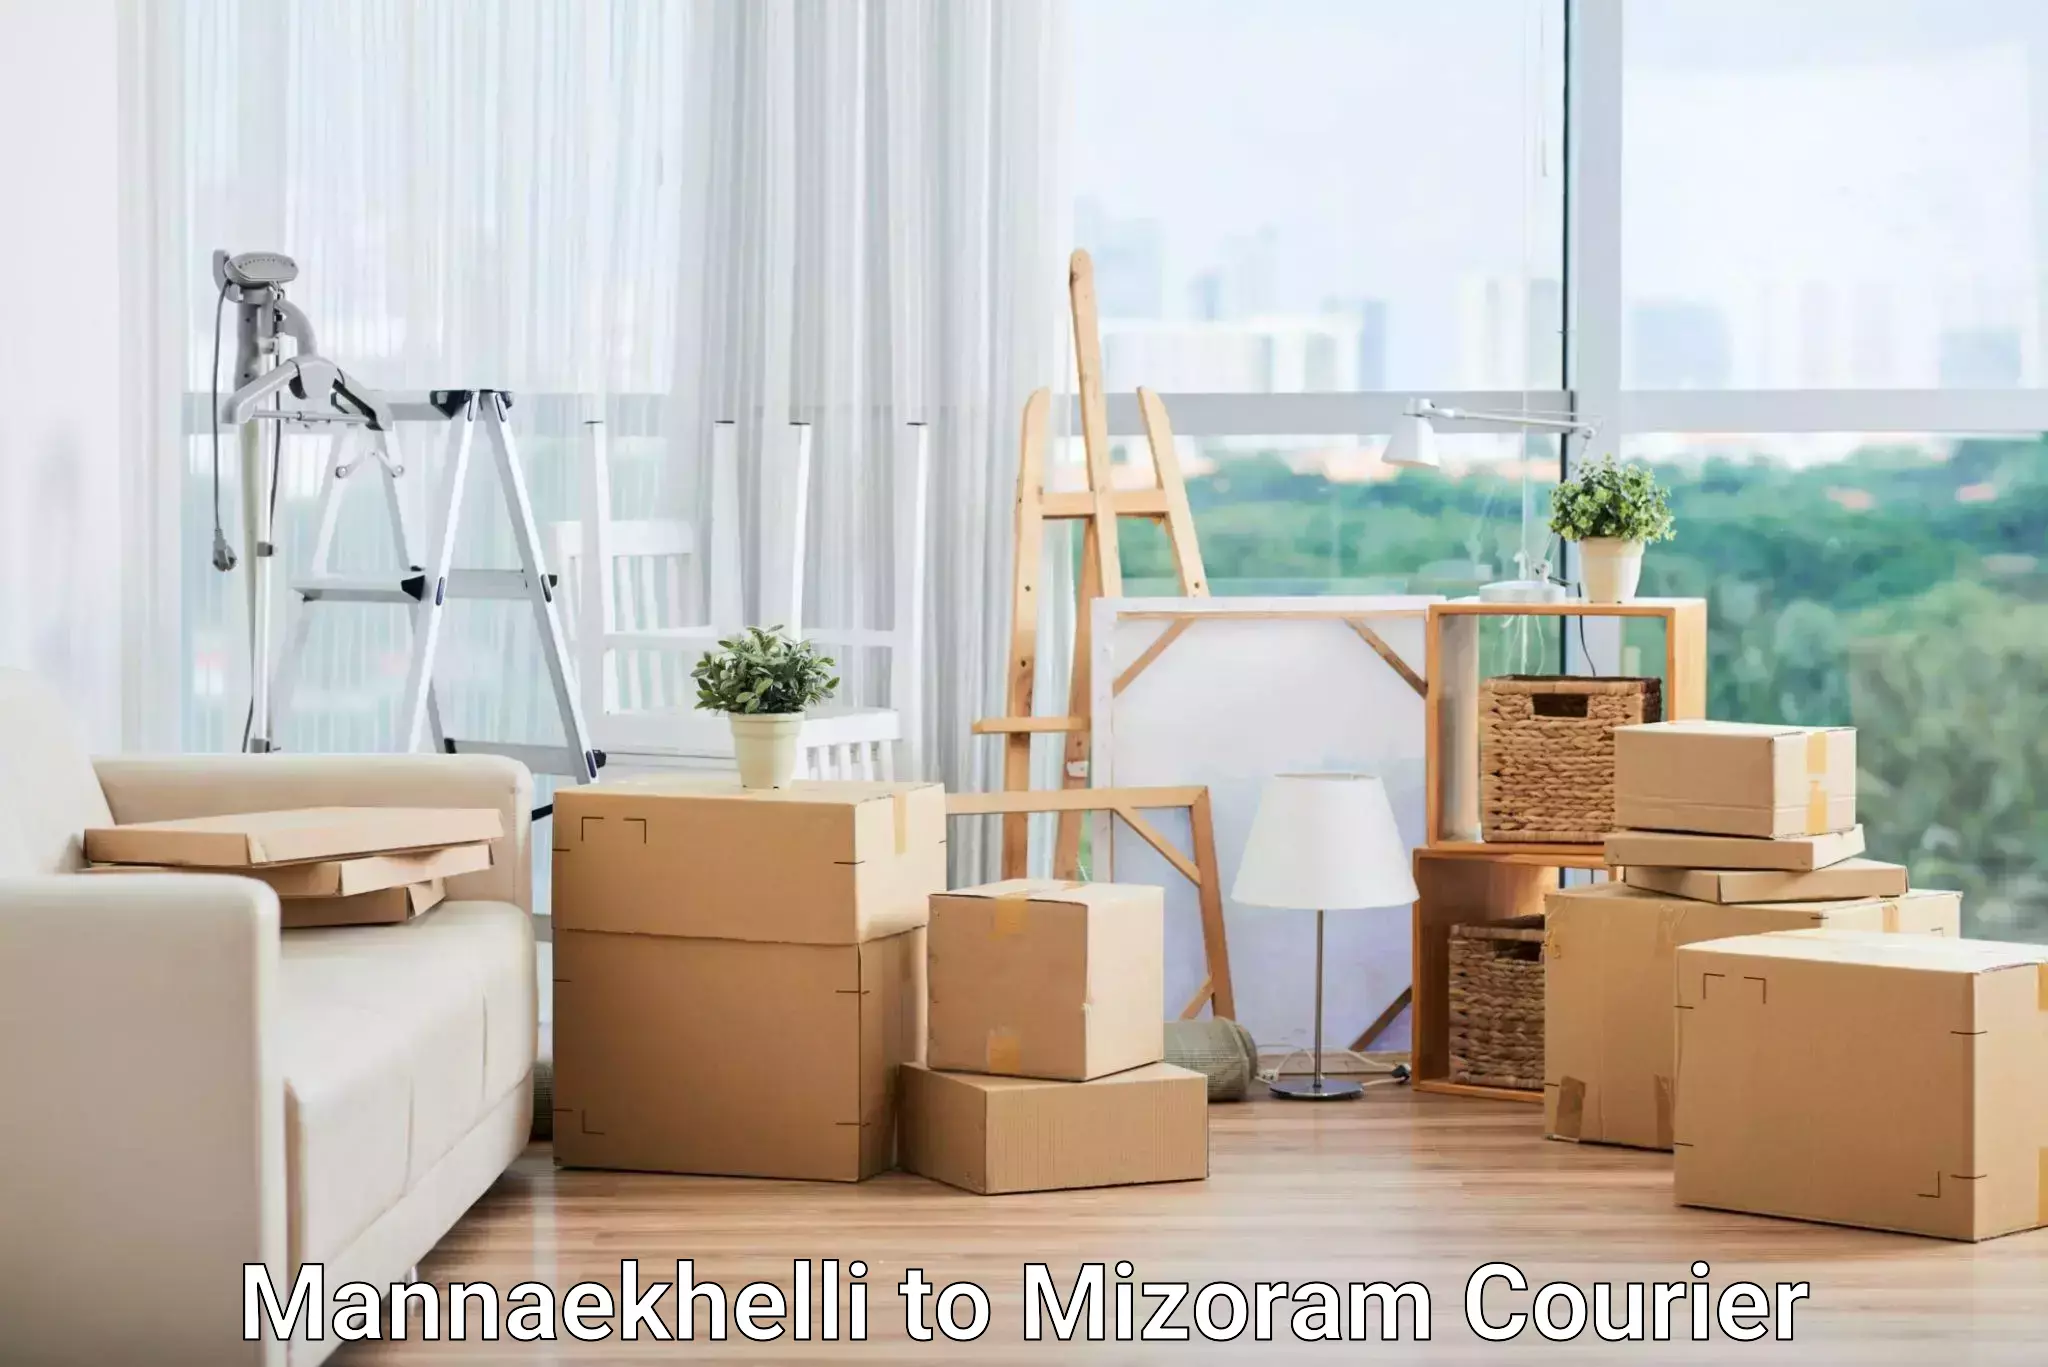 Urgent courier needs Mannaekhelli to Thenzawl